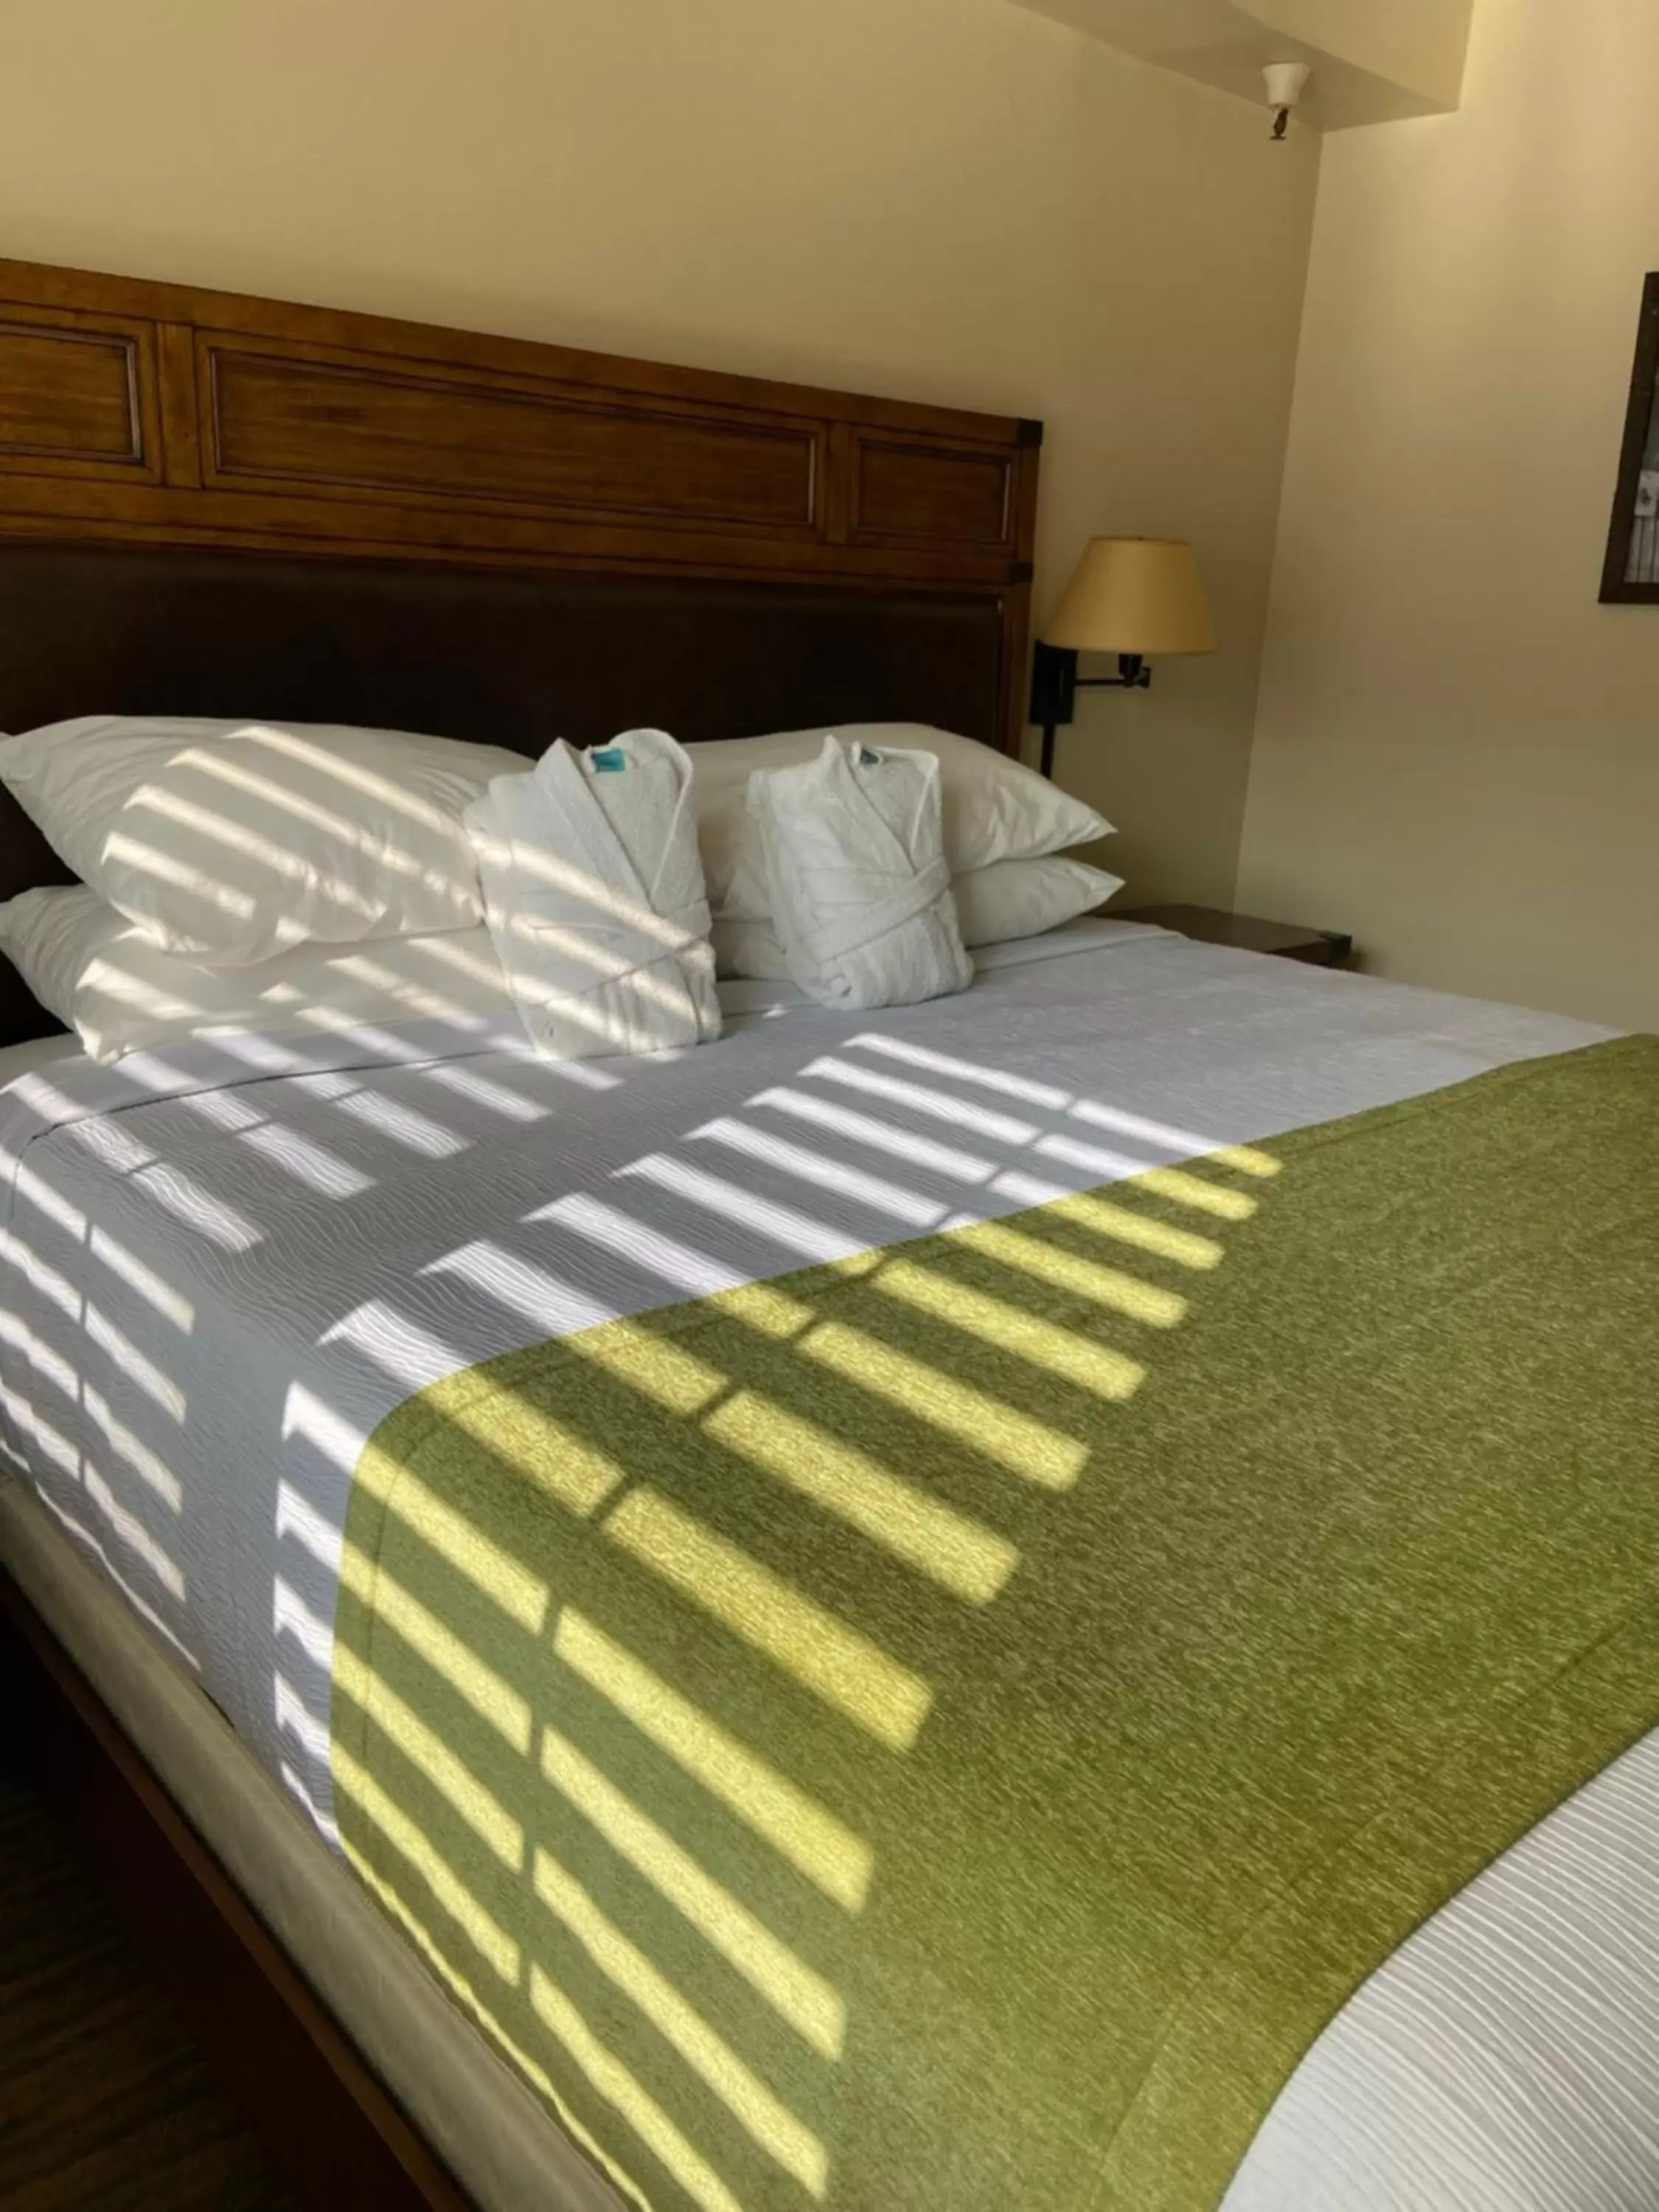 Bed, Room Photo in GetAways at Park Regency Resort